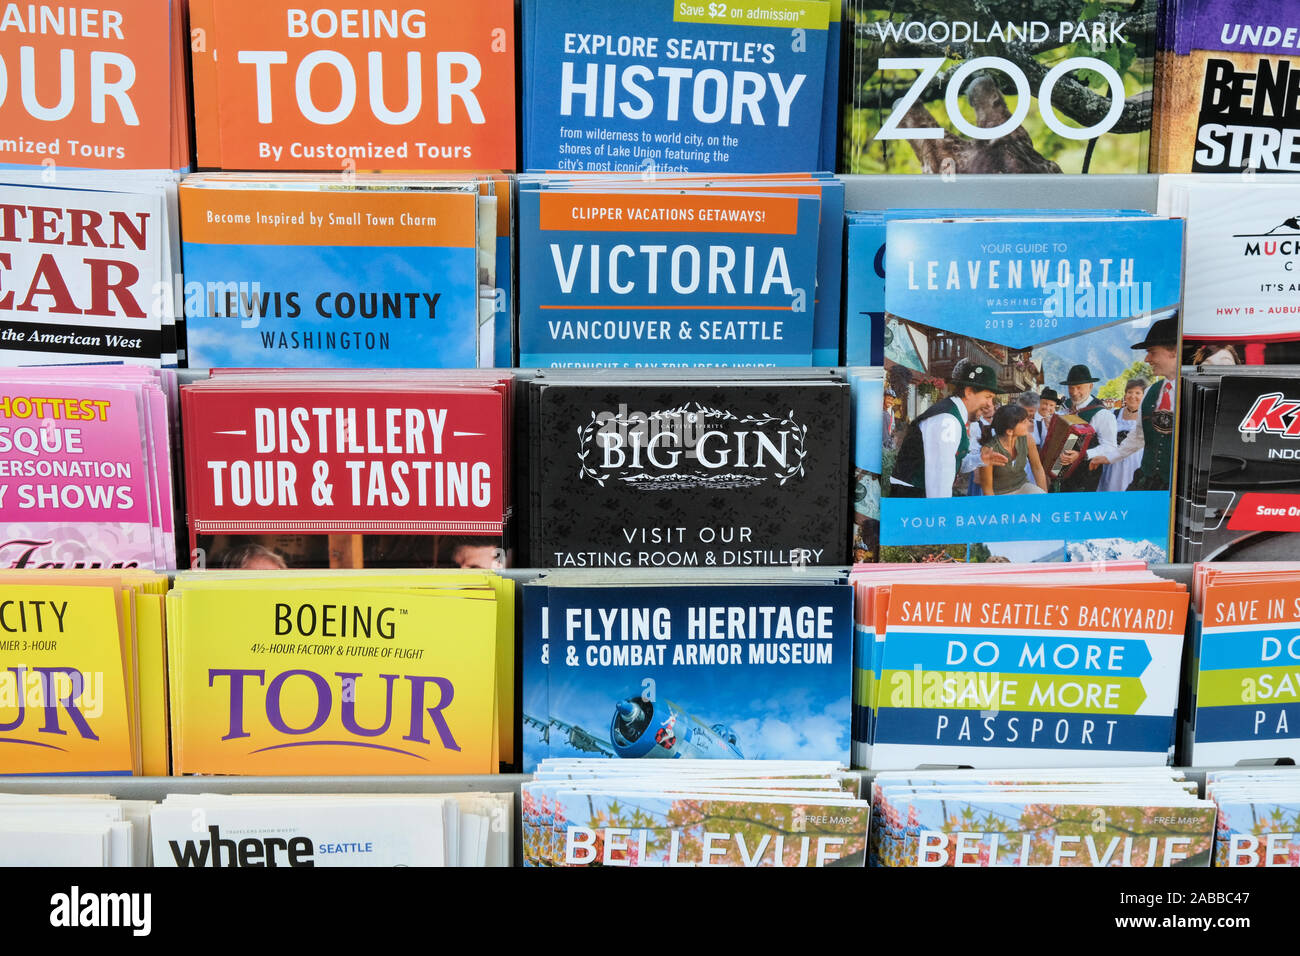 Des brochures et des cartes touristiques pour les attractions locales sur l'affichage à l'Aéroport International de Seattle-Tacoma, Seattle, Washington, USA. Banque D'Images